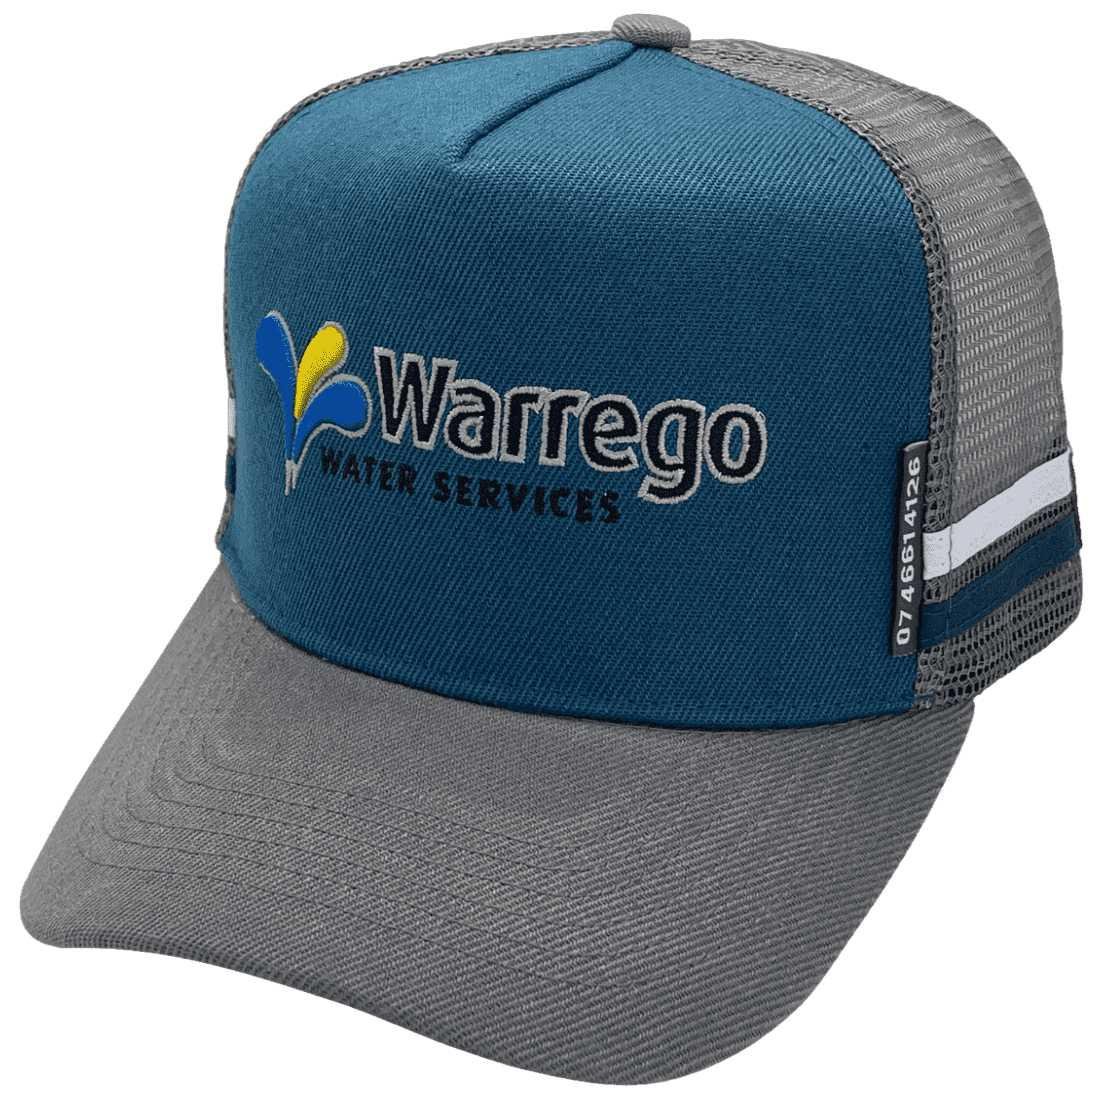 Warrego Water Services HP Midrange Aussie Trucker Hat Acrylic